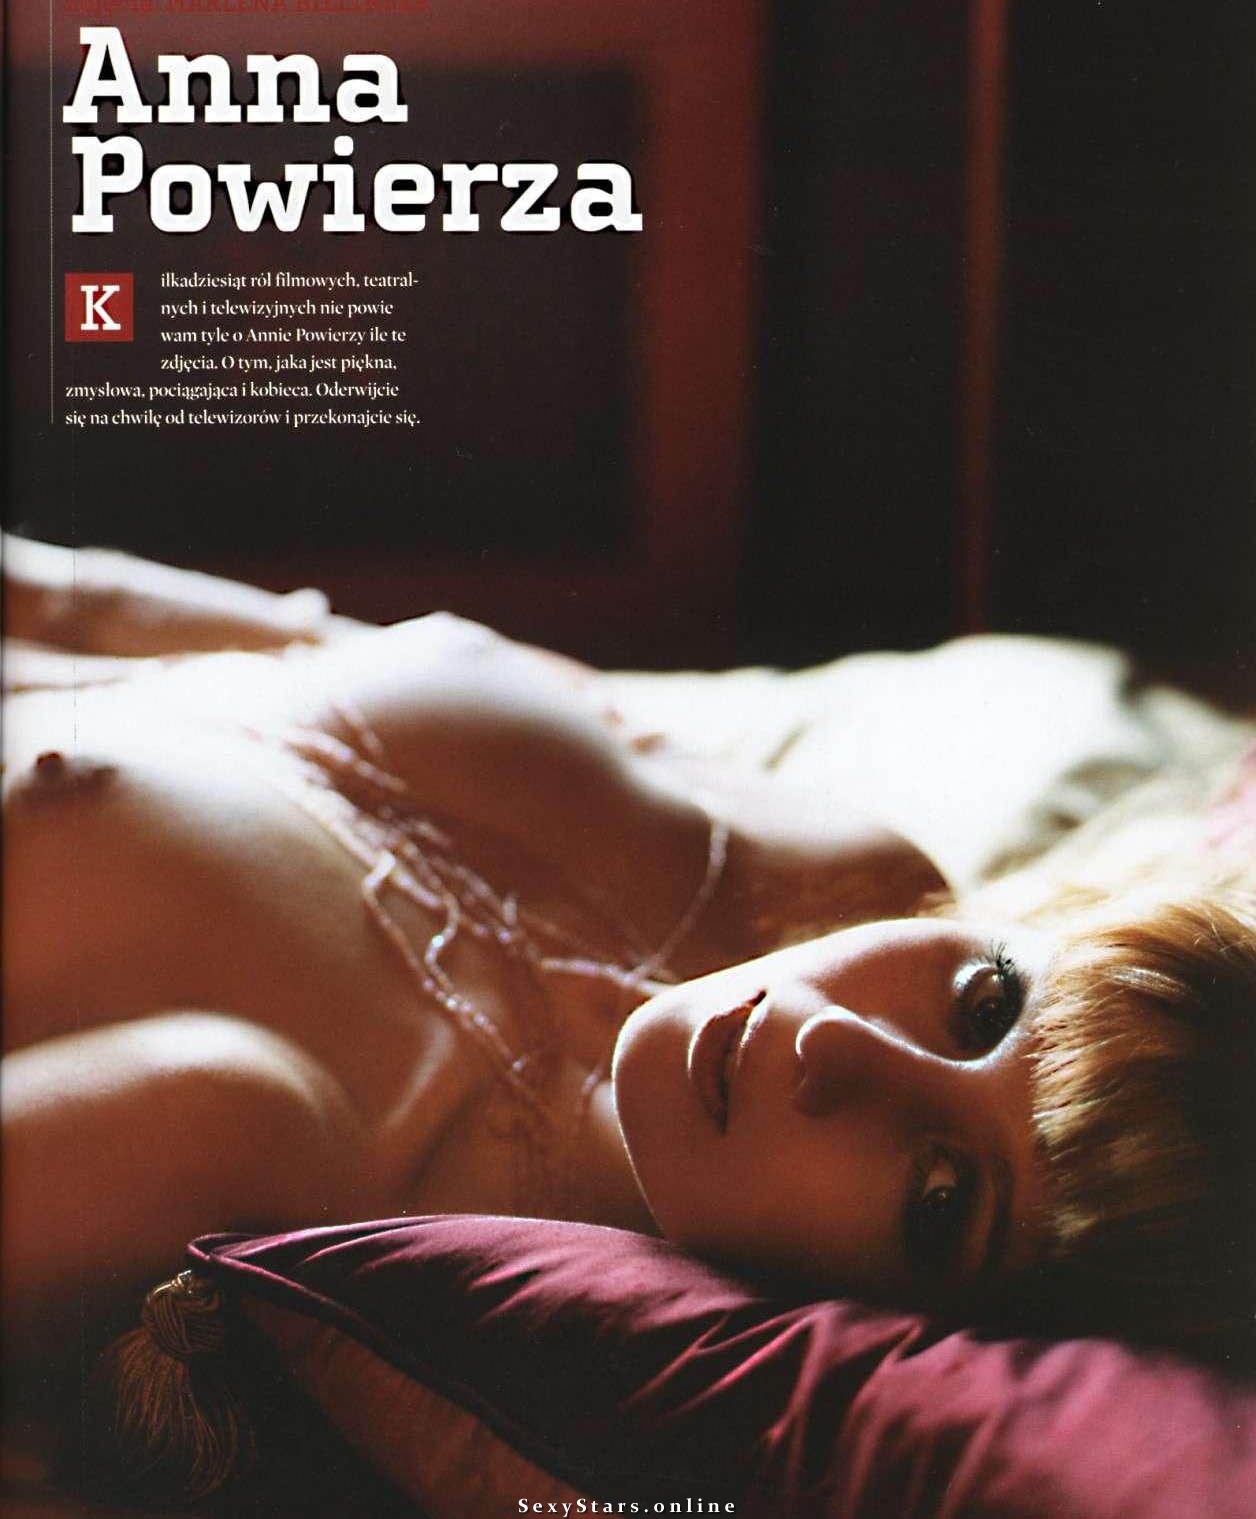 Anna Powierza nude. Photo - 12